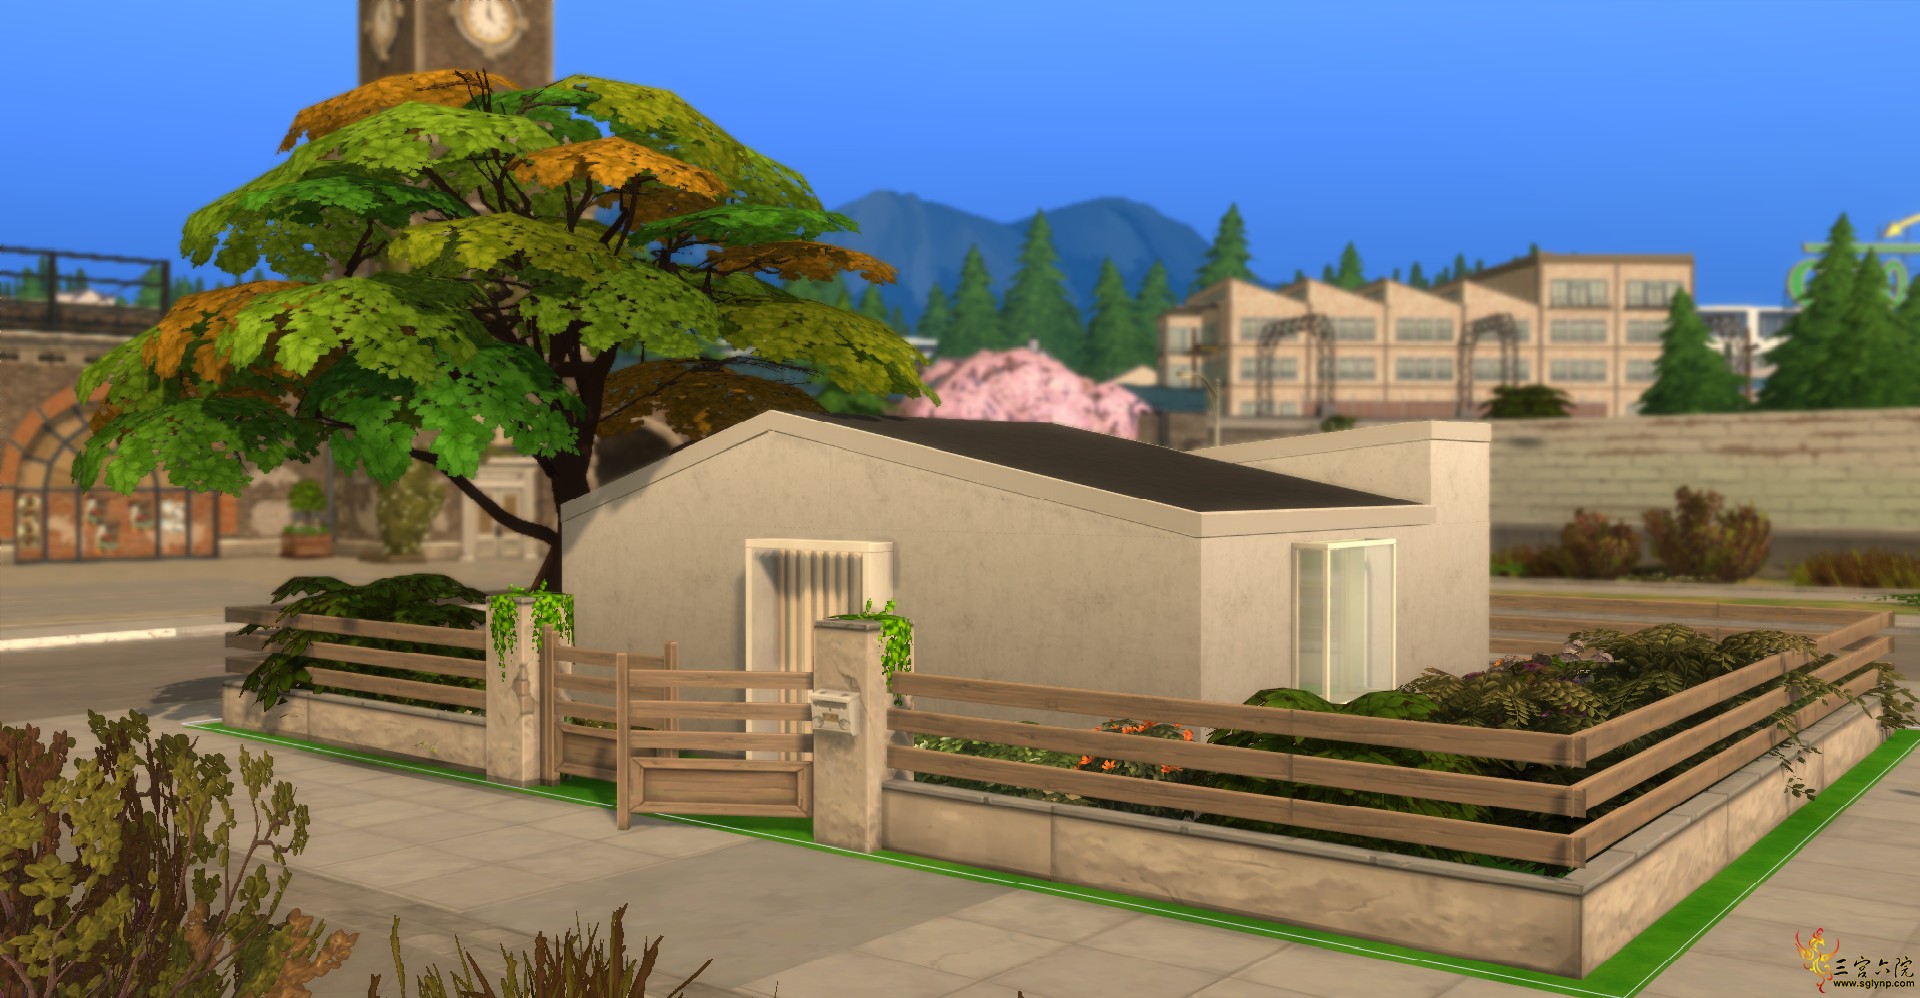 Sims 4 Screenshot 2021.05.10 - 19.10.31.58.png